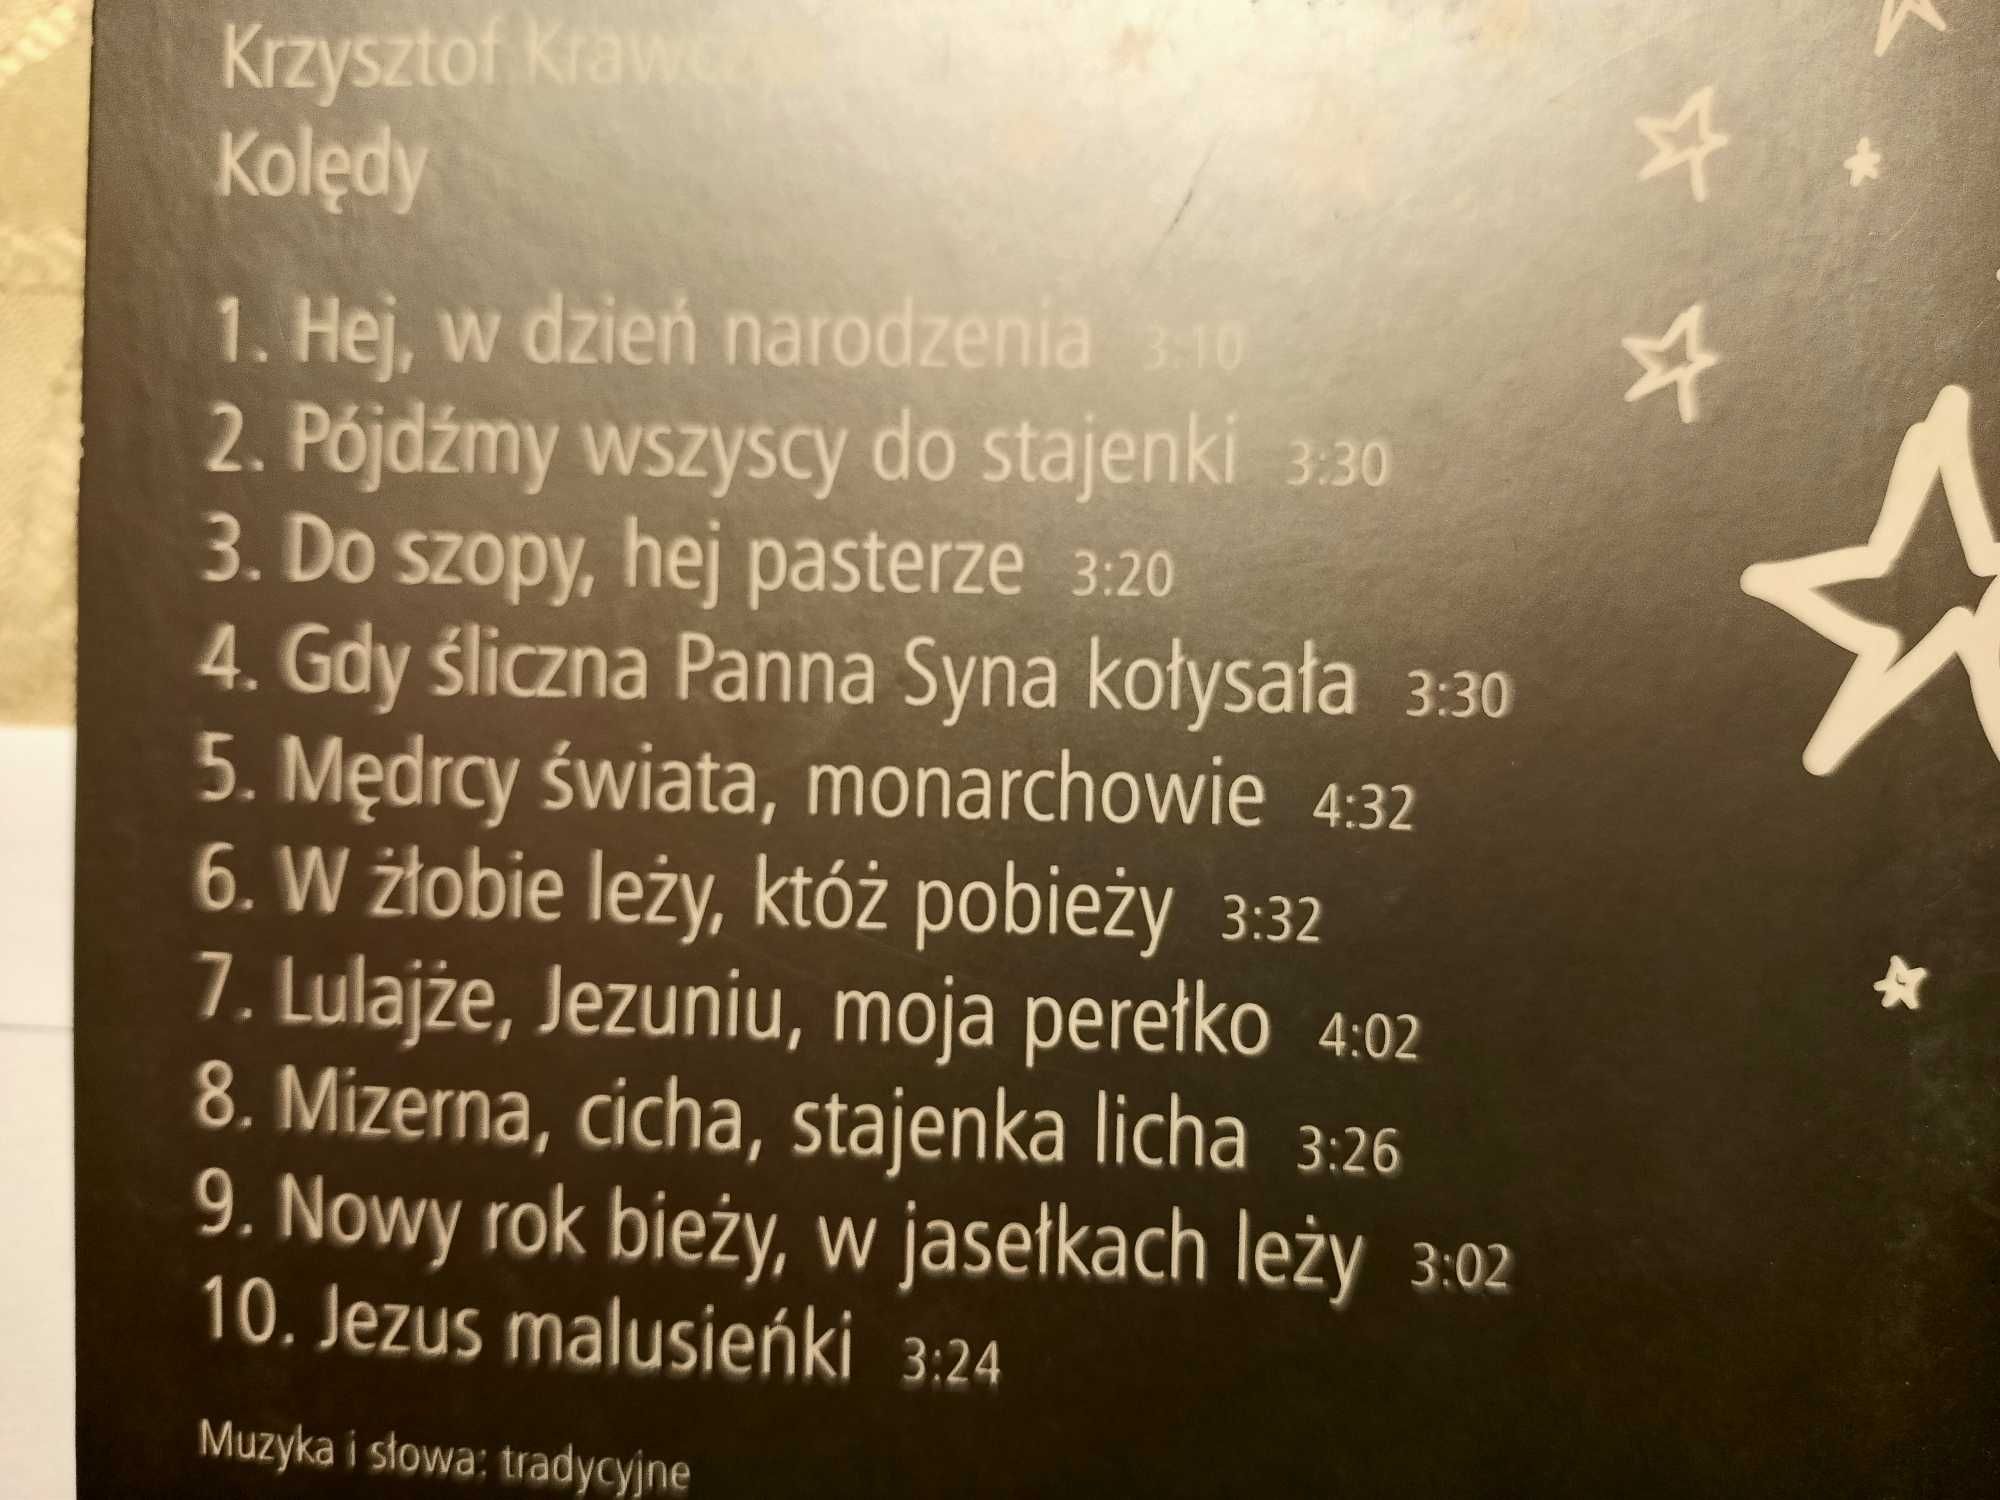 Kolędy Krzysztof Krawczyk, płyta CD